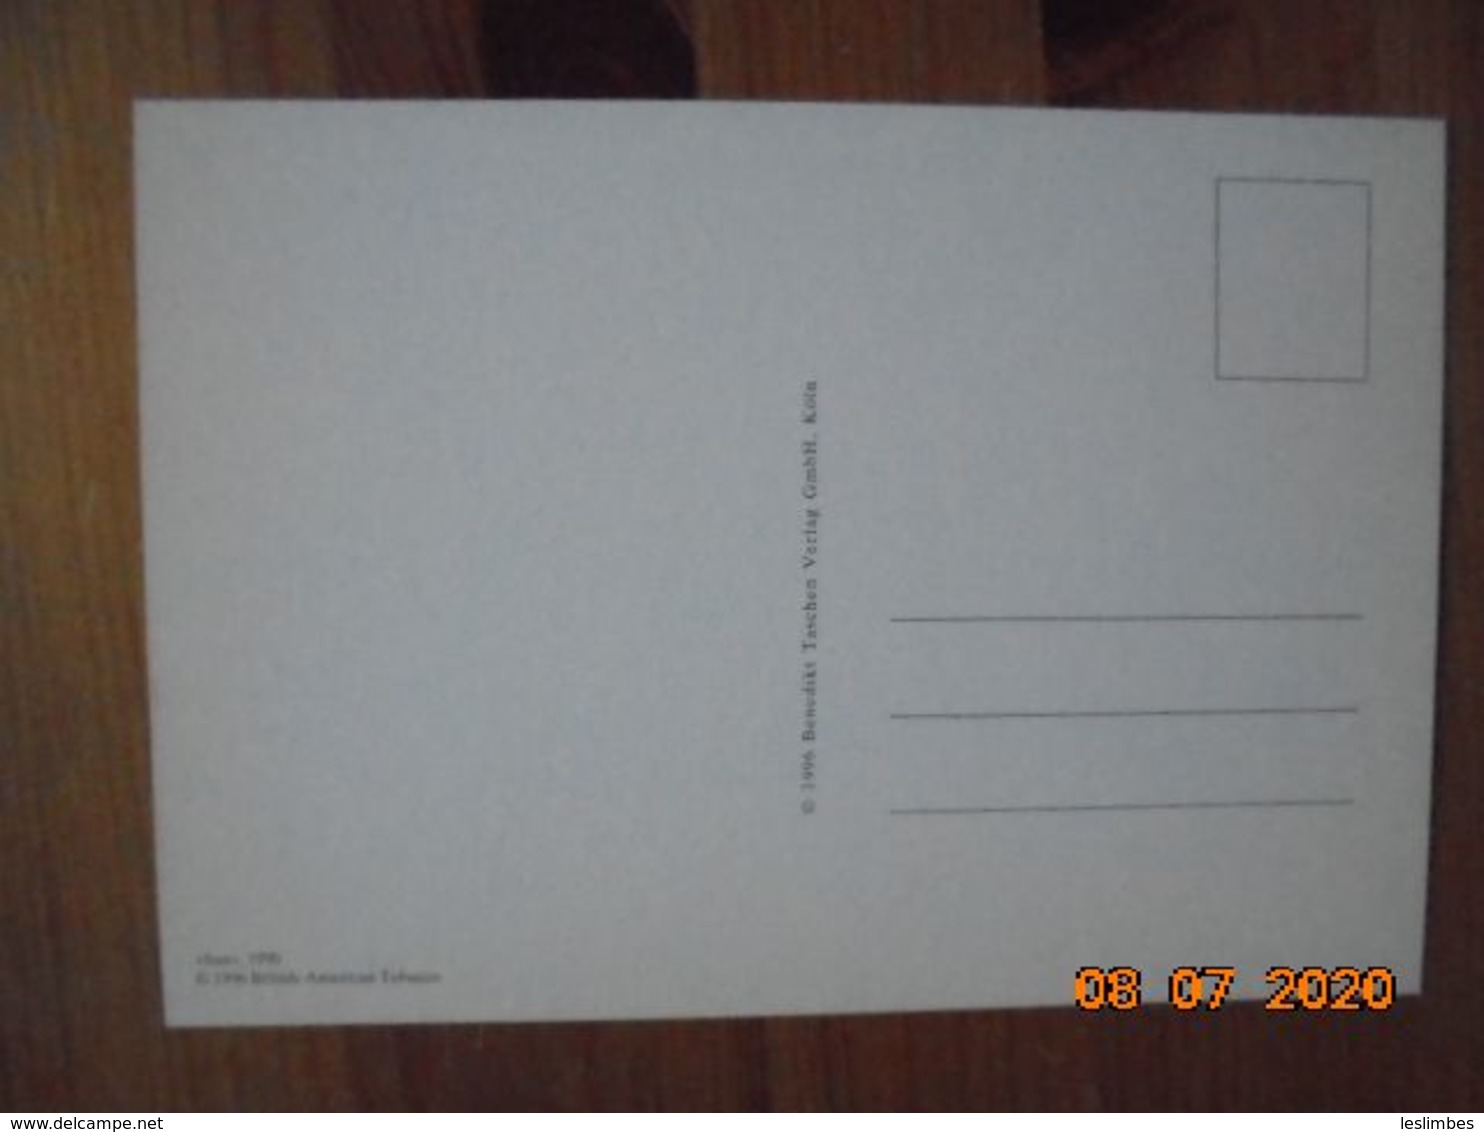 Carte Postale Publicitaire Allemand (Taschen 1996) 16,3 X 11,4 Cm. Lucky Strike. Sonst Nichts. "Sun" 1990 - Werbeartikel